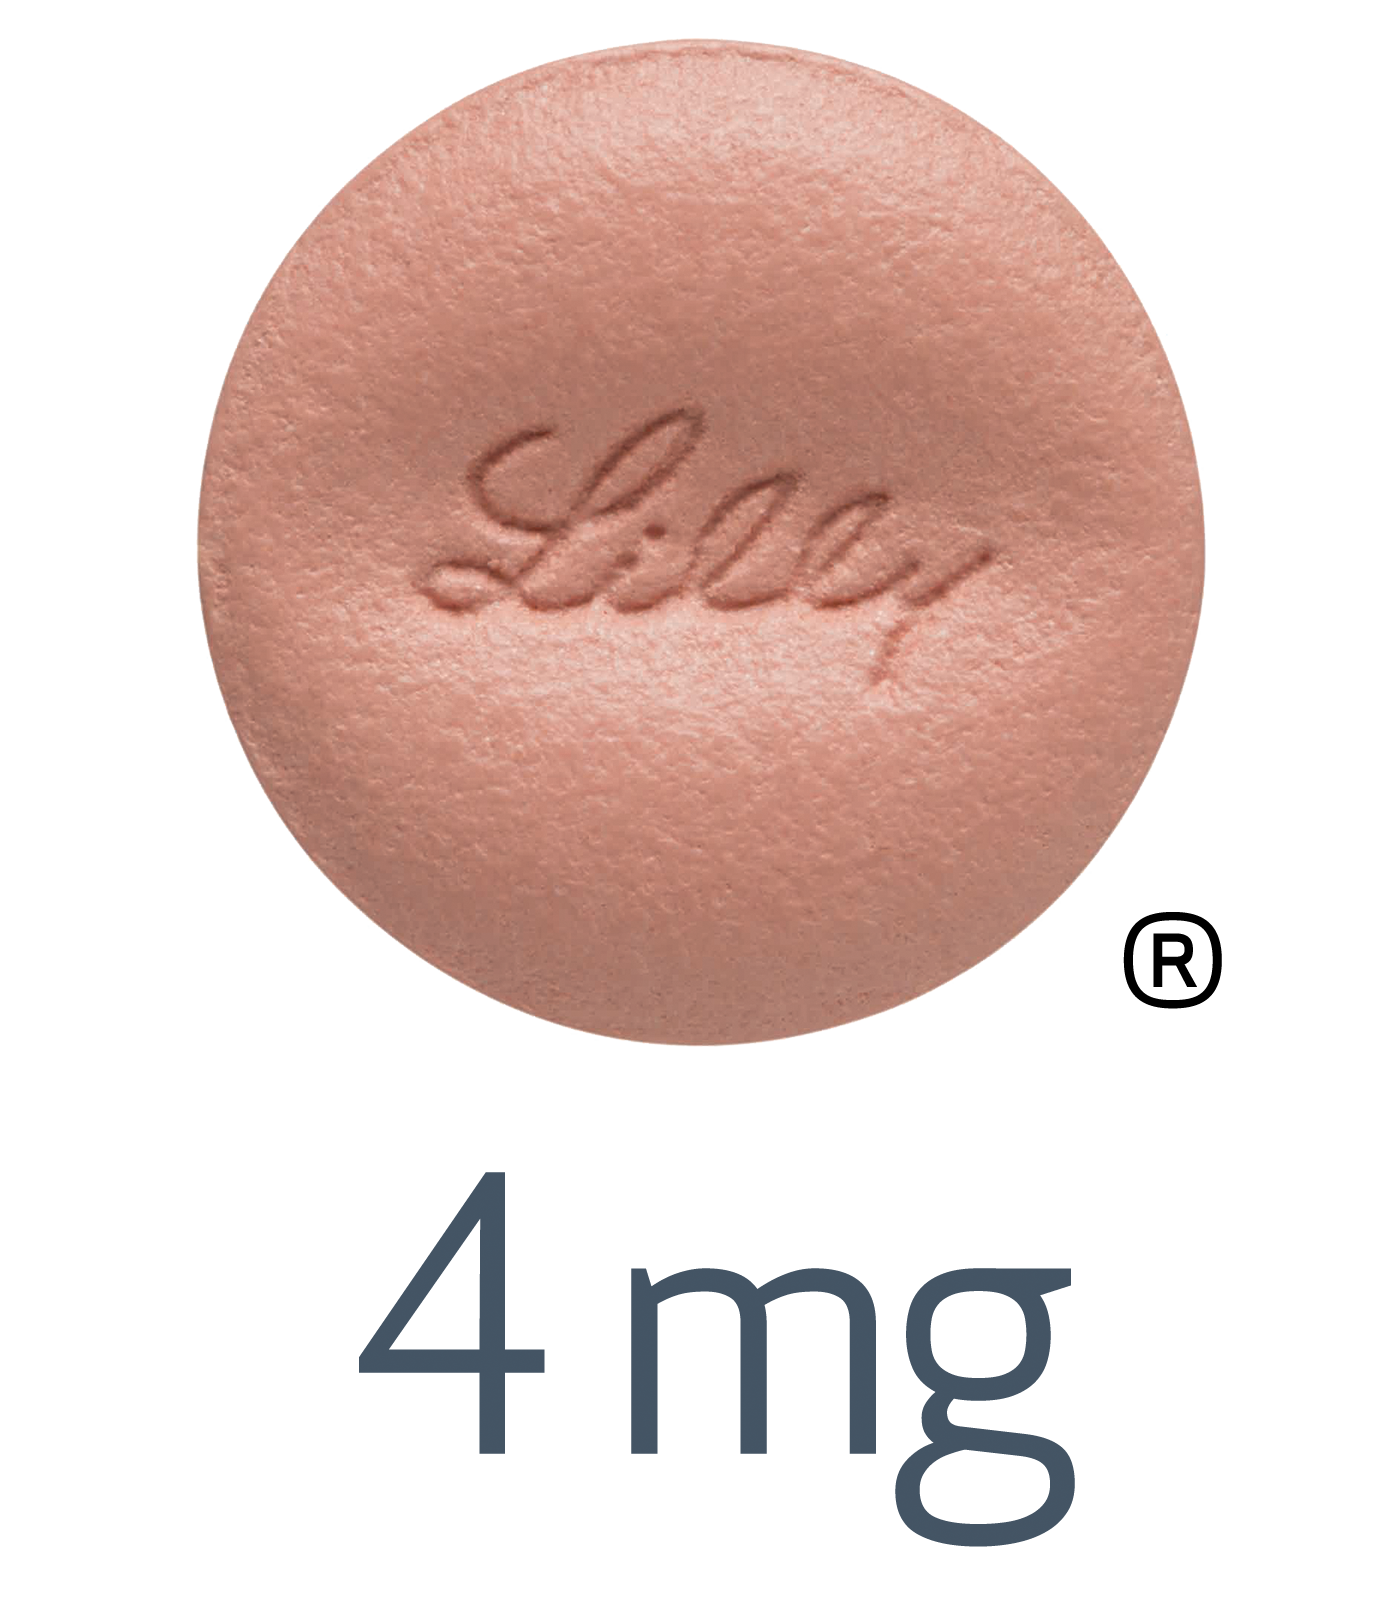 Olumiant 4mg pill